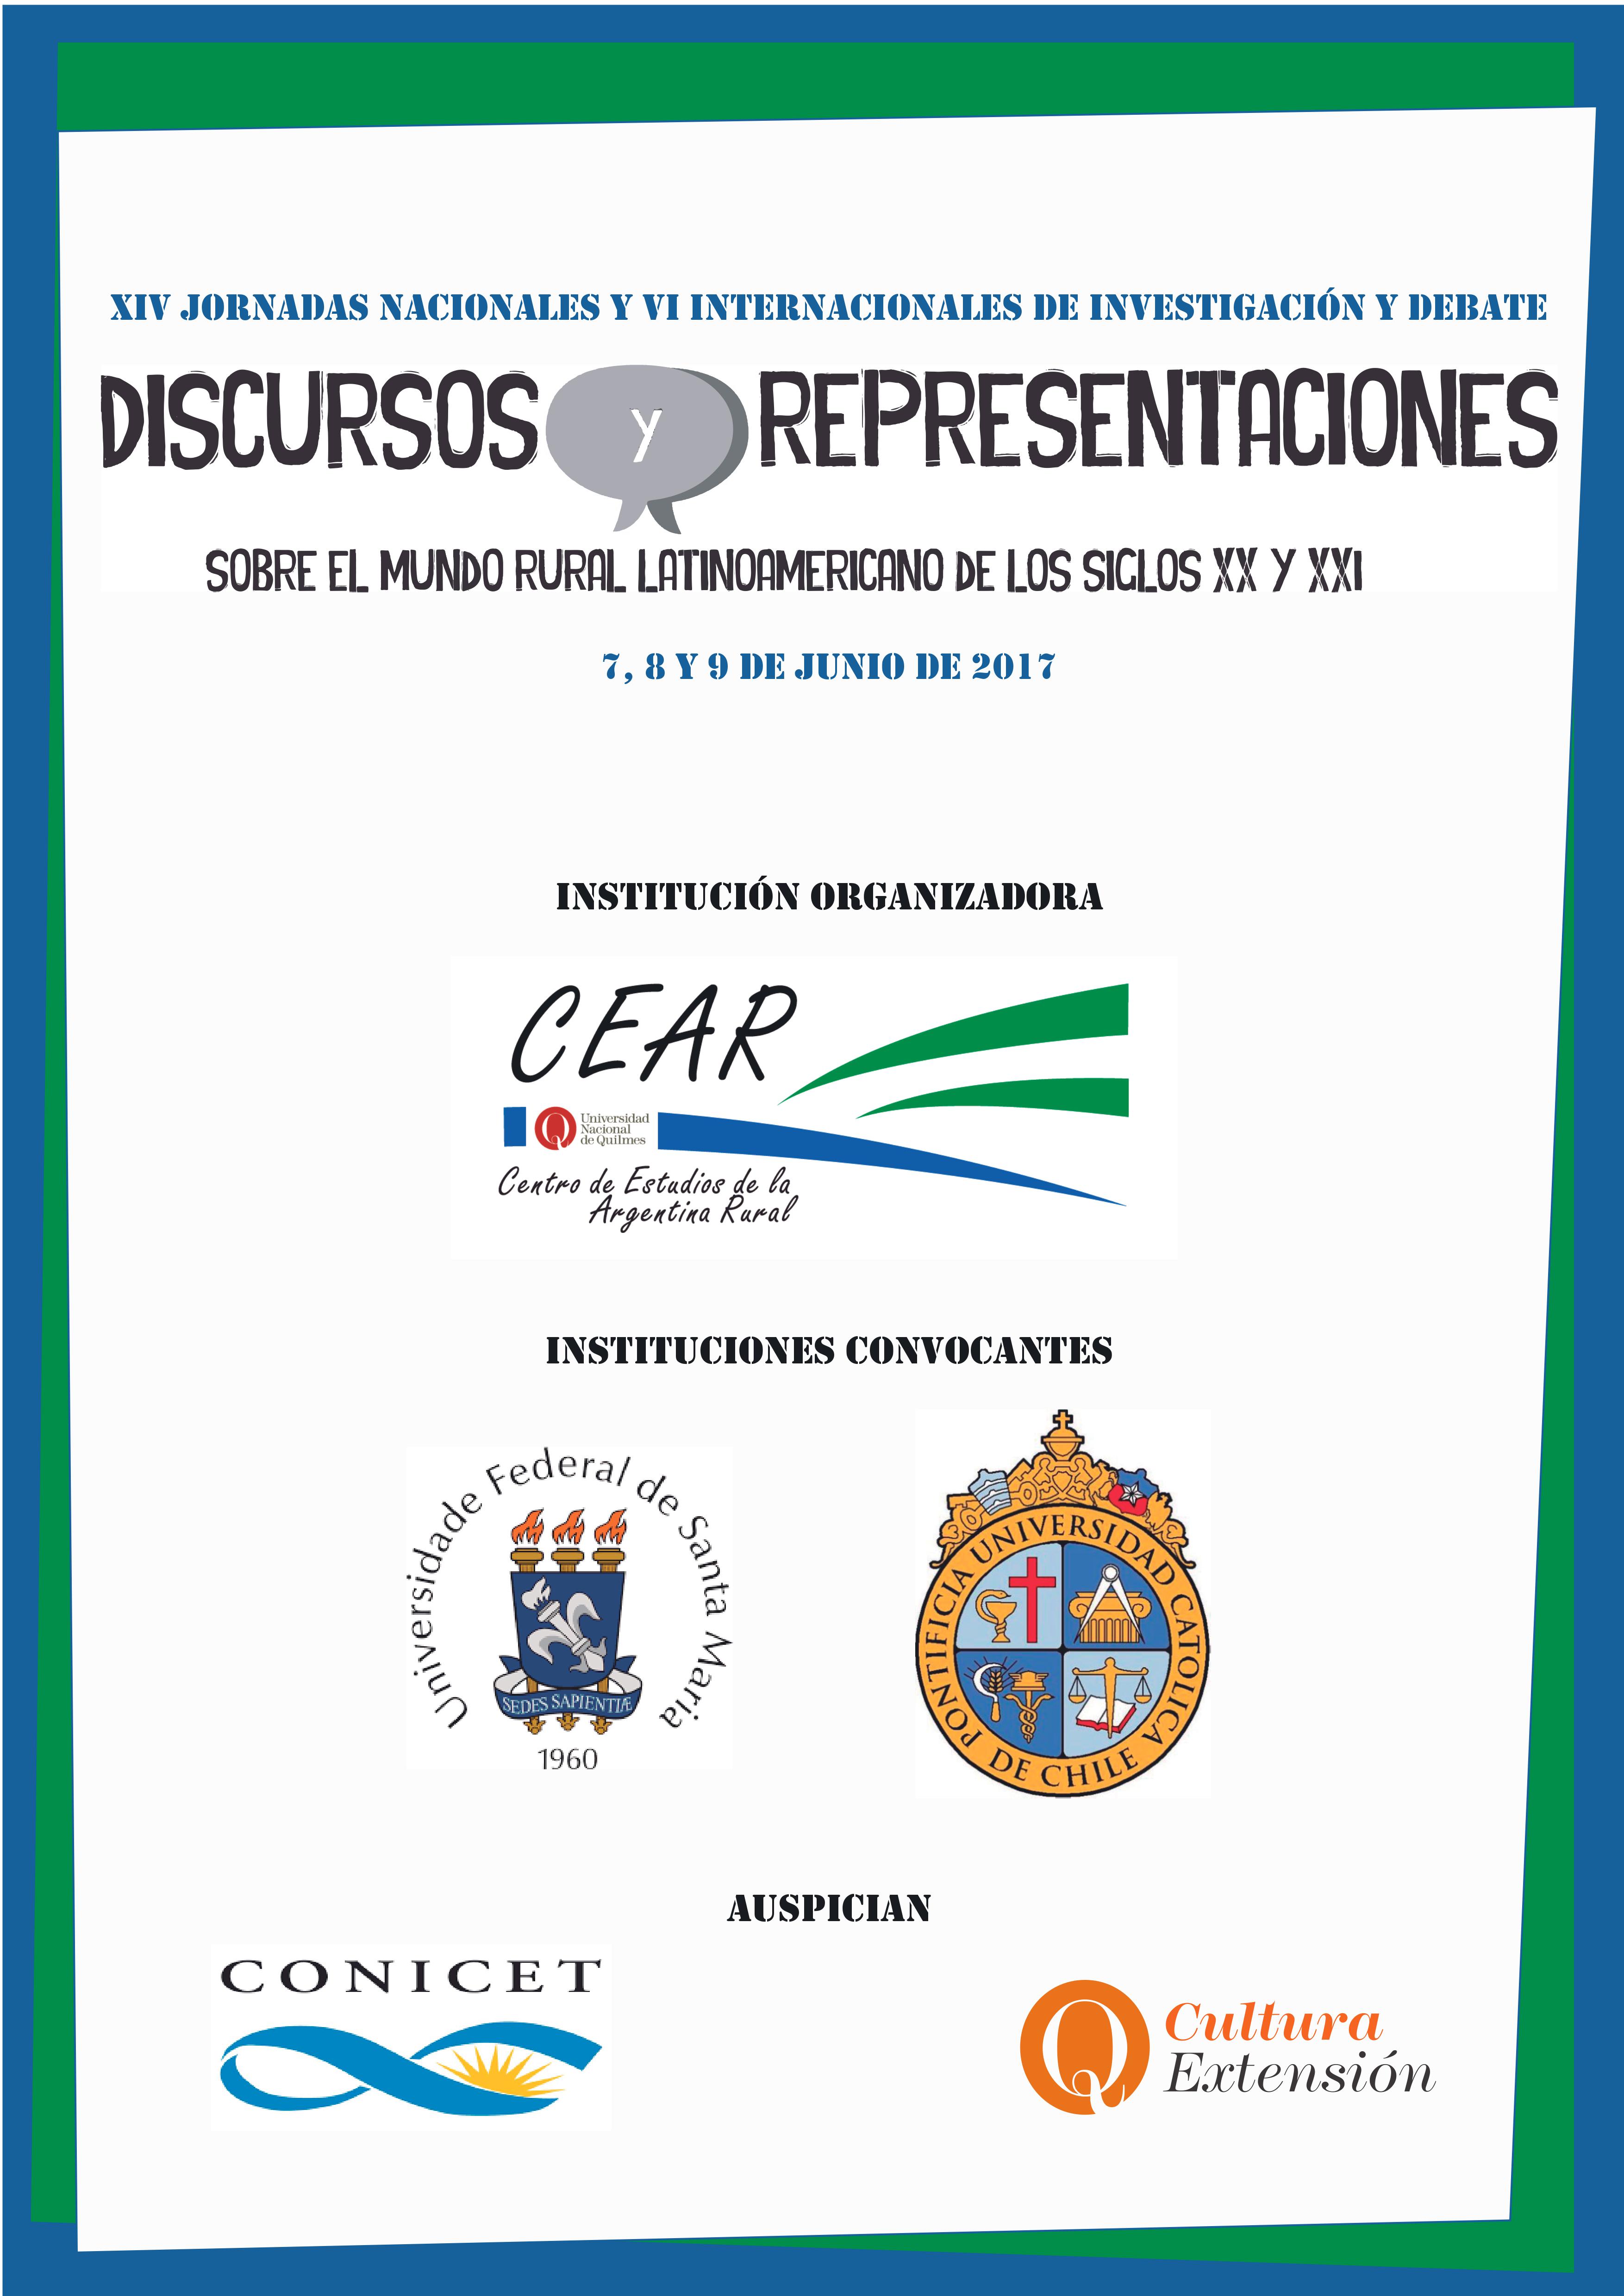 XIV Jornadas Nacionales y VI Internacionales de Investigación y Debate: "Discursos y representaciones sobre el mundo rural latinoamericano de los siglos XX y XXI"